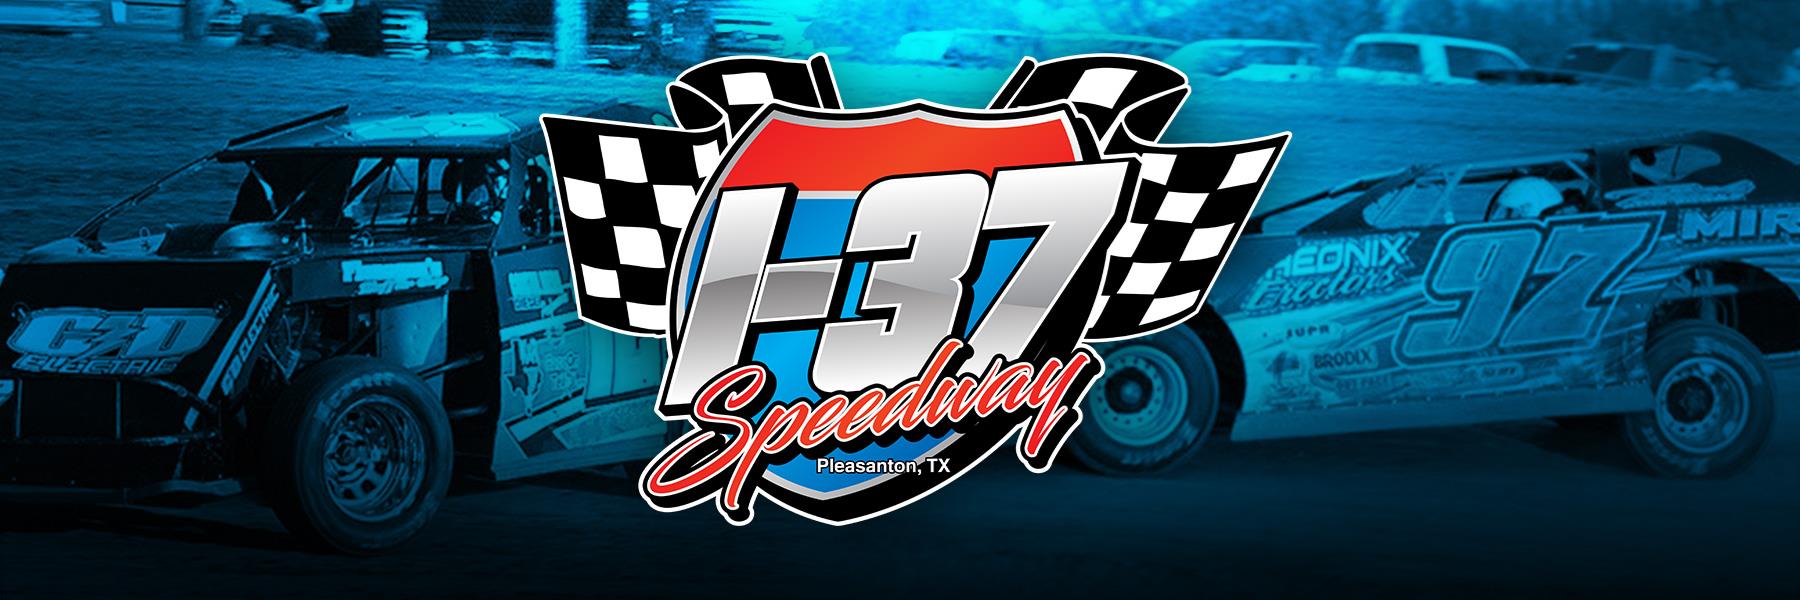 9/11/2021 - I-37 Speedway